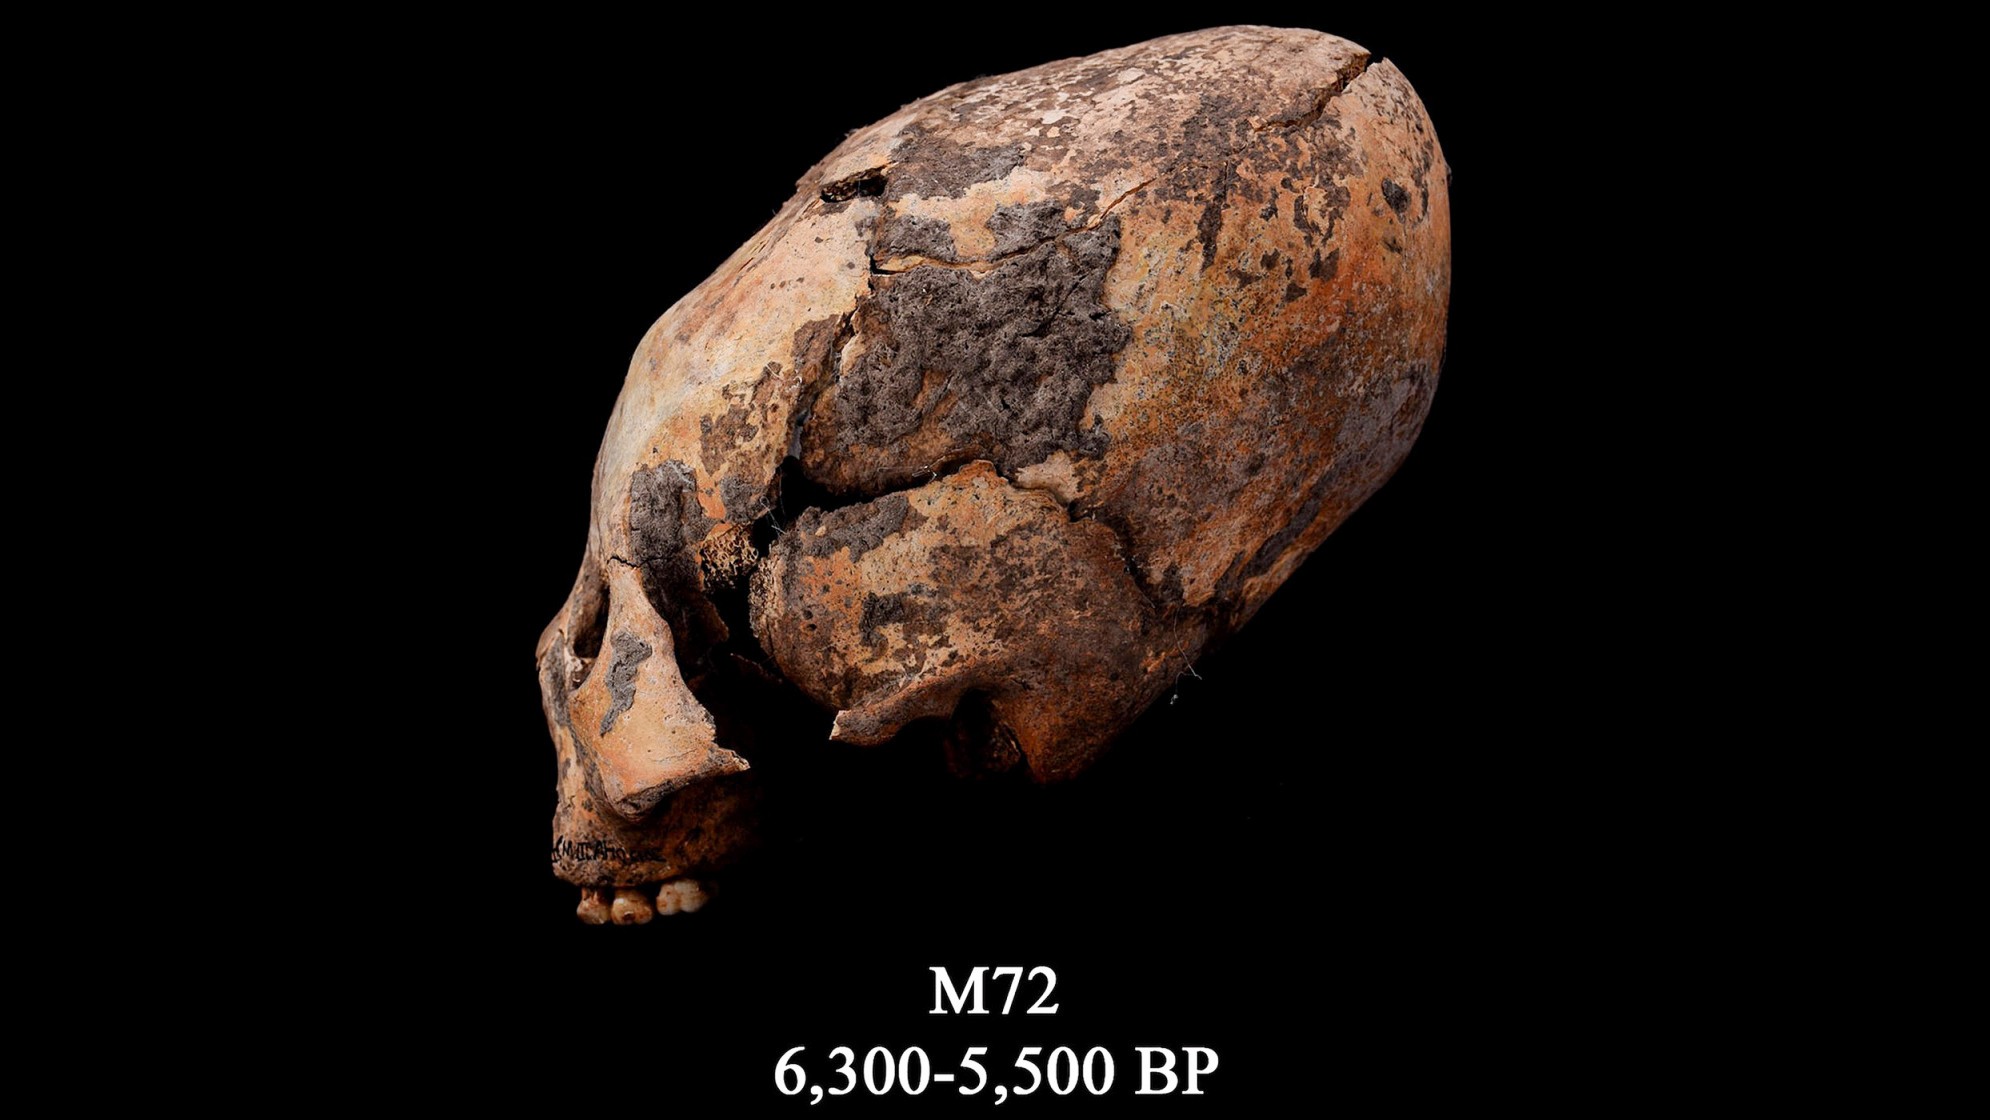 Der als M72 bekannte Schädel. Dieser umgeformte menschliche Schädel wurde im Nordosten Chinas gefunden und absichtlich modifiziert